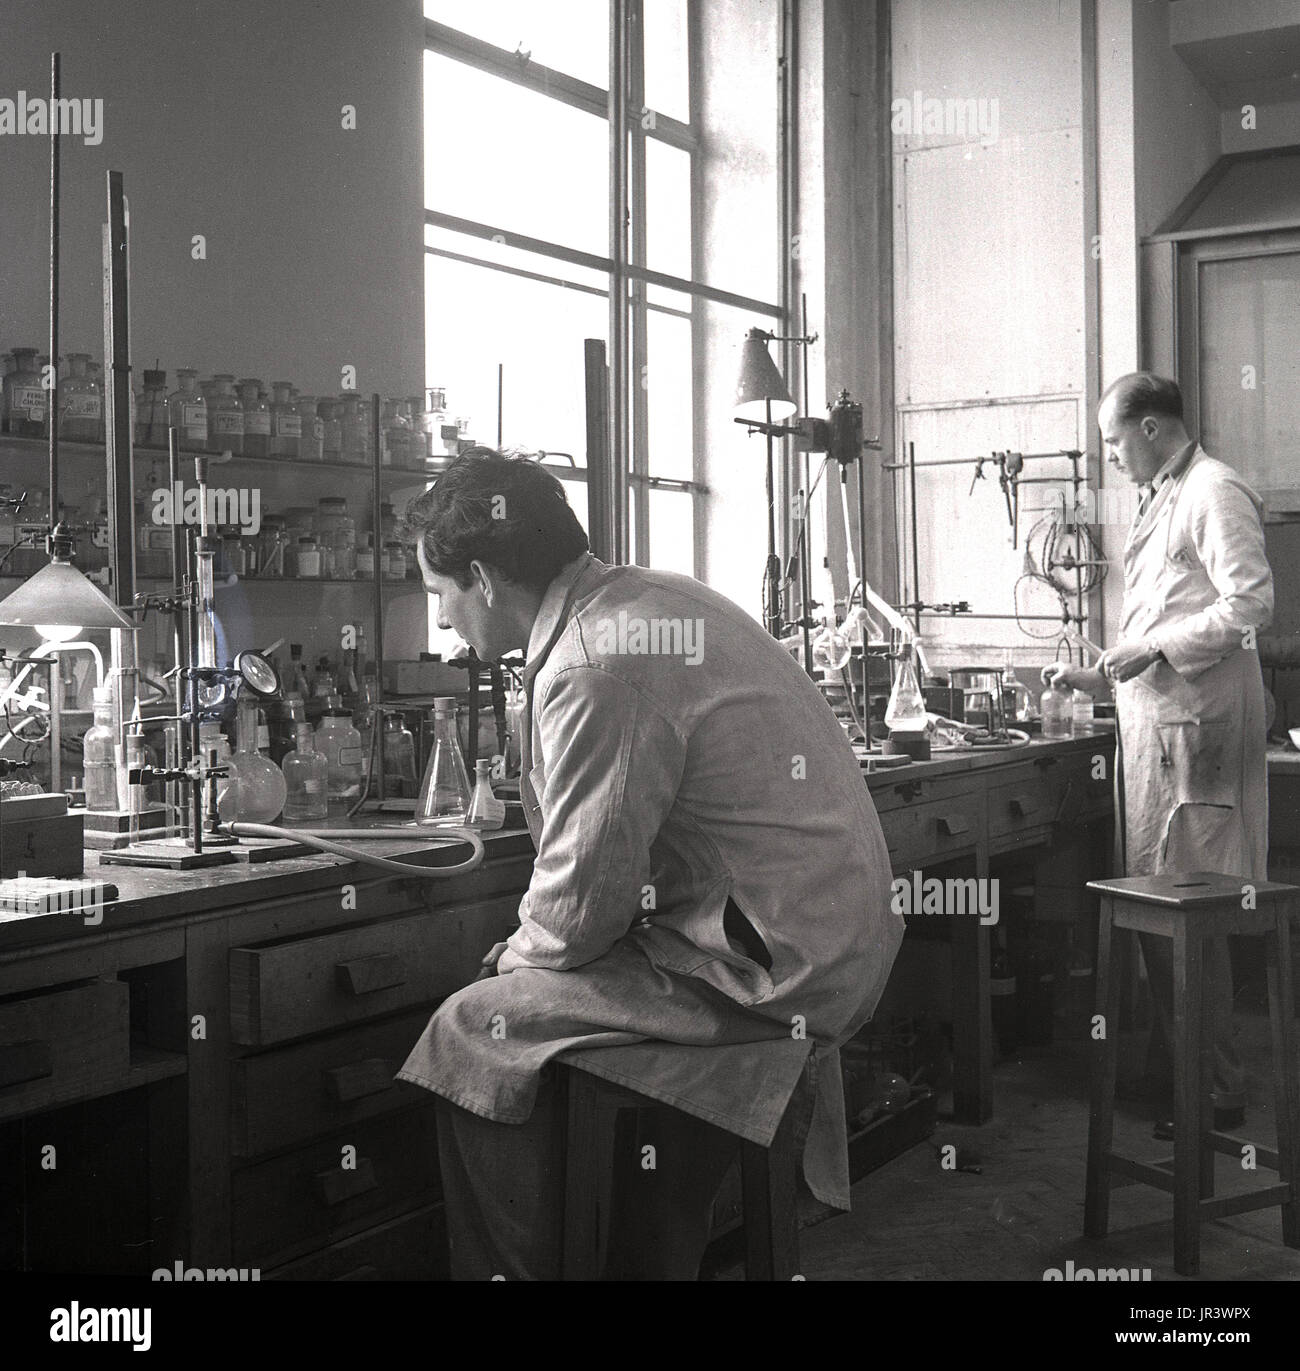 1950, historische, männliche Wissenschaftler in einem Labor Experimente durchführen, an einer hölzernen Werkbank, England, UK. Stockfoto